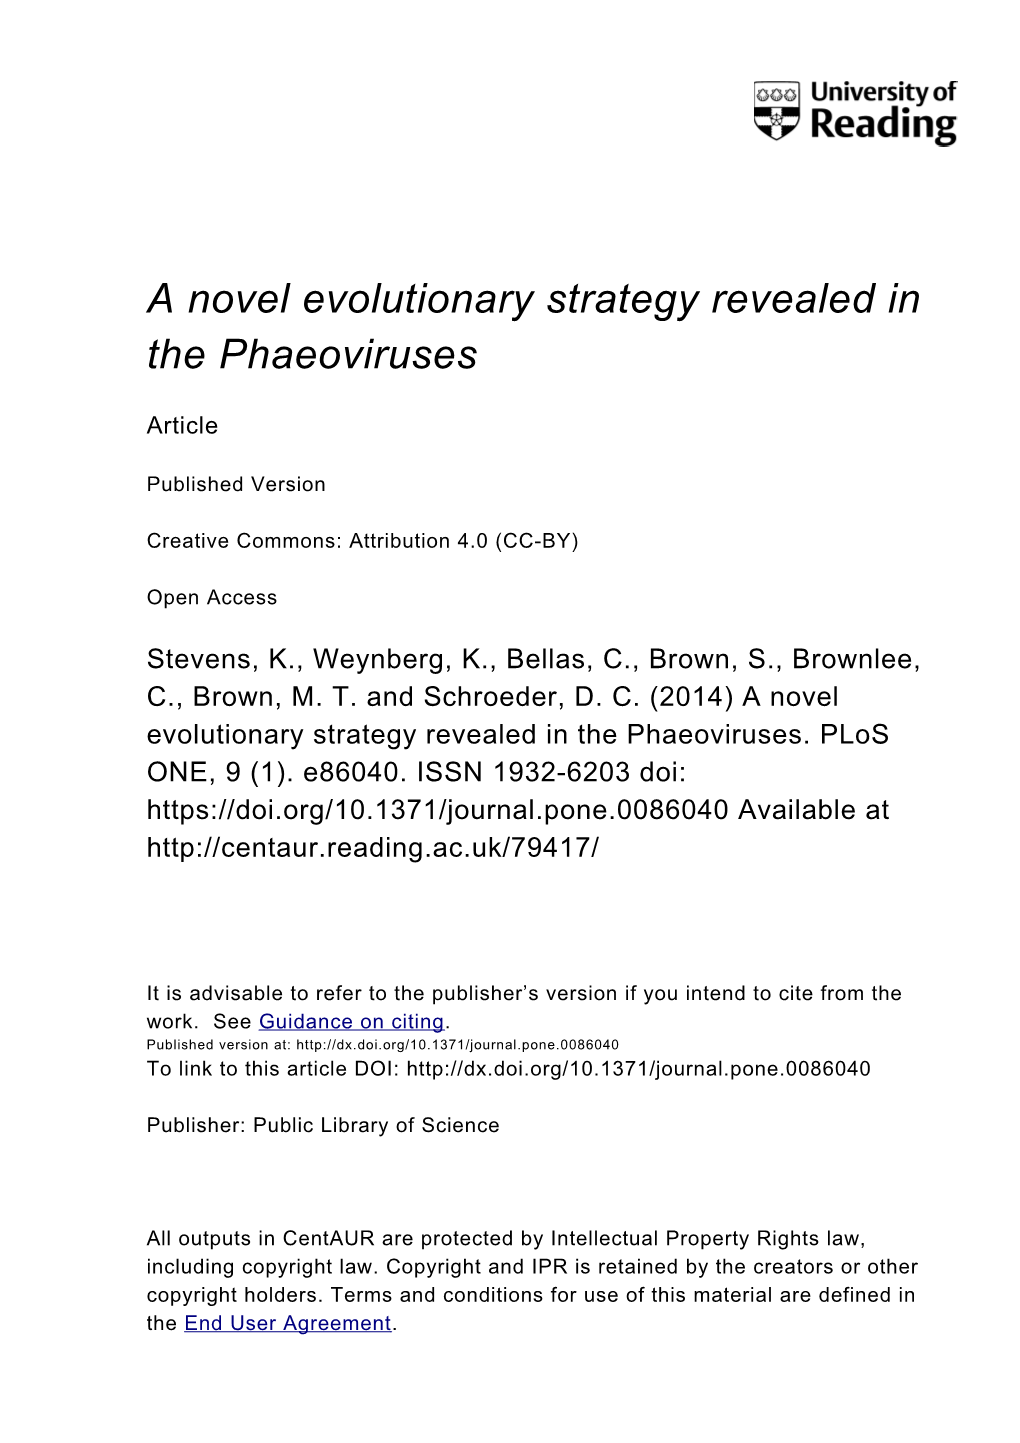 A Novel Evolutionary Strategy Revealed in the Phaeoviruses